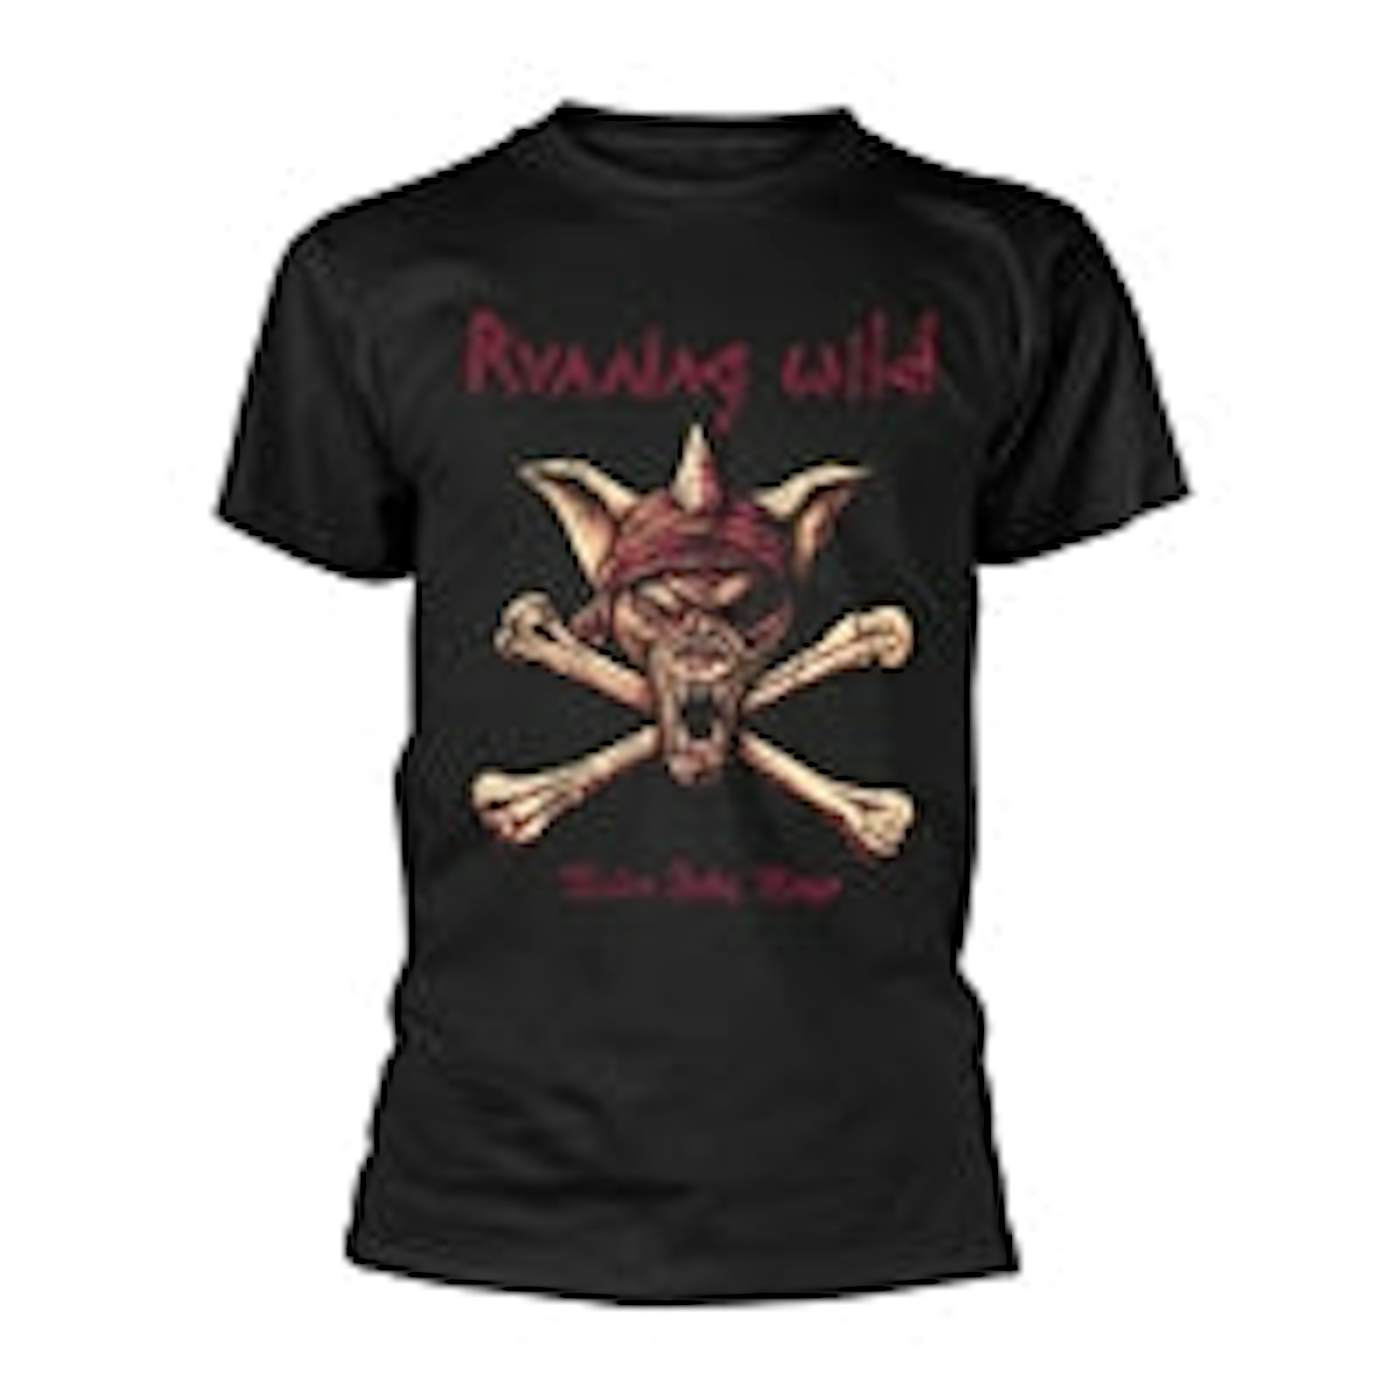 Running Wild T Shirt - Under Jolly Roger (Crossbones)